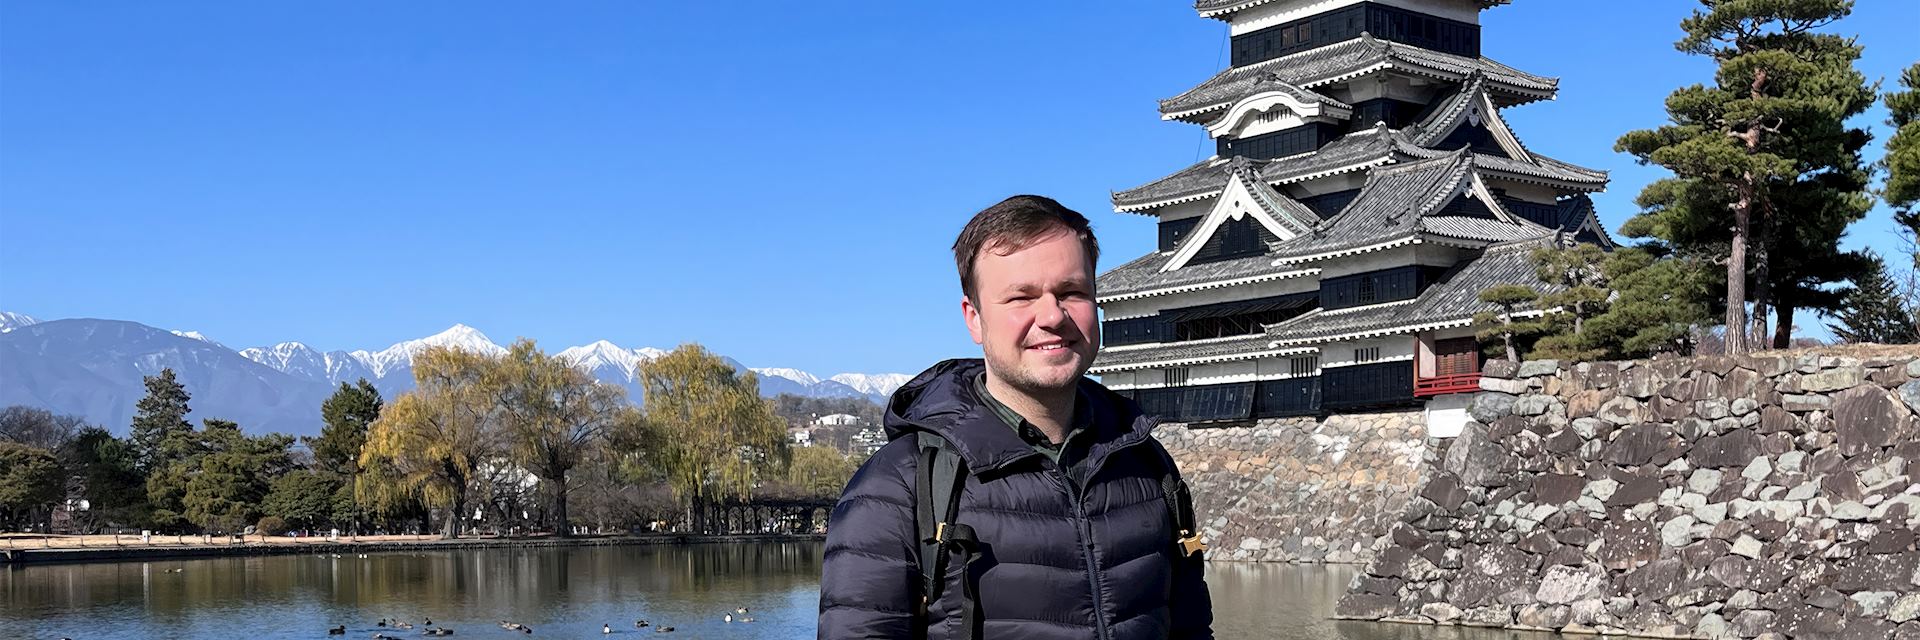 Matt visiting Japan